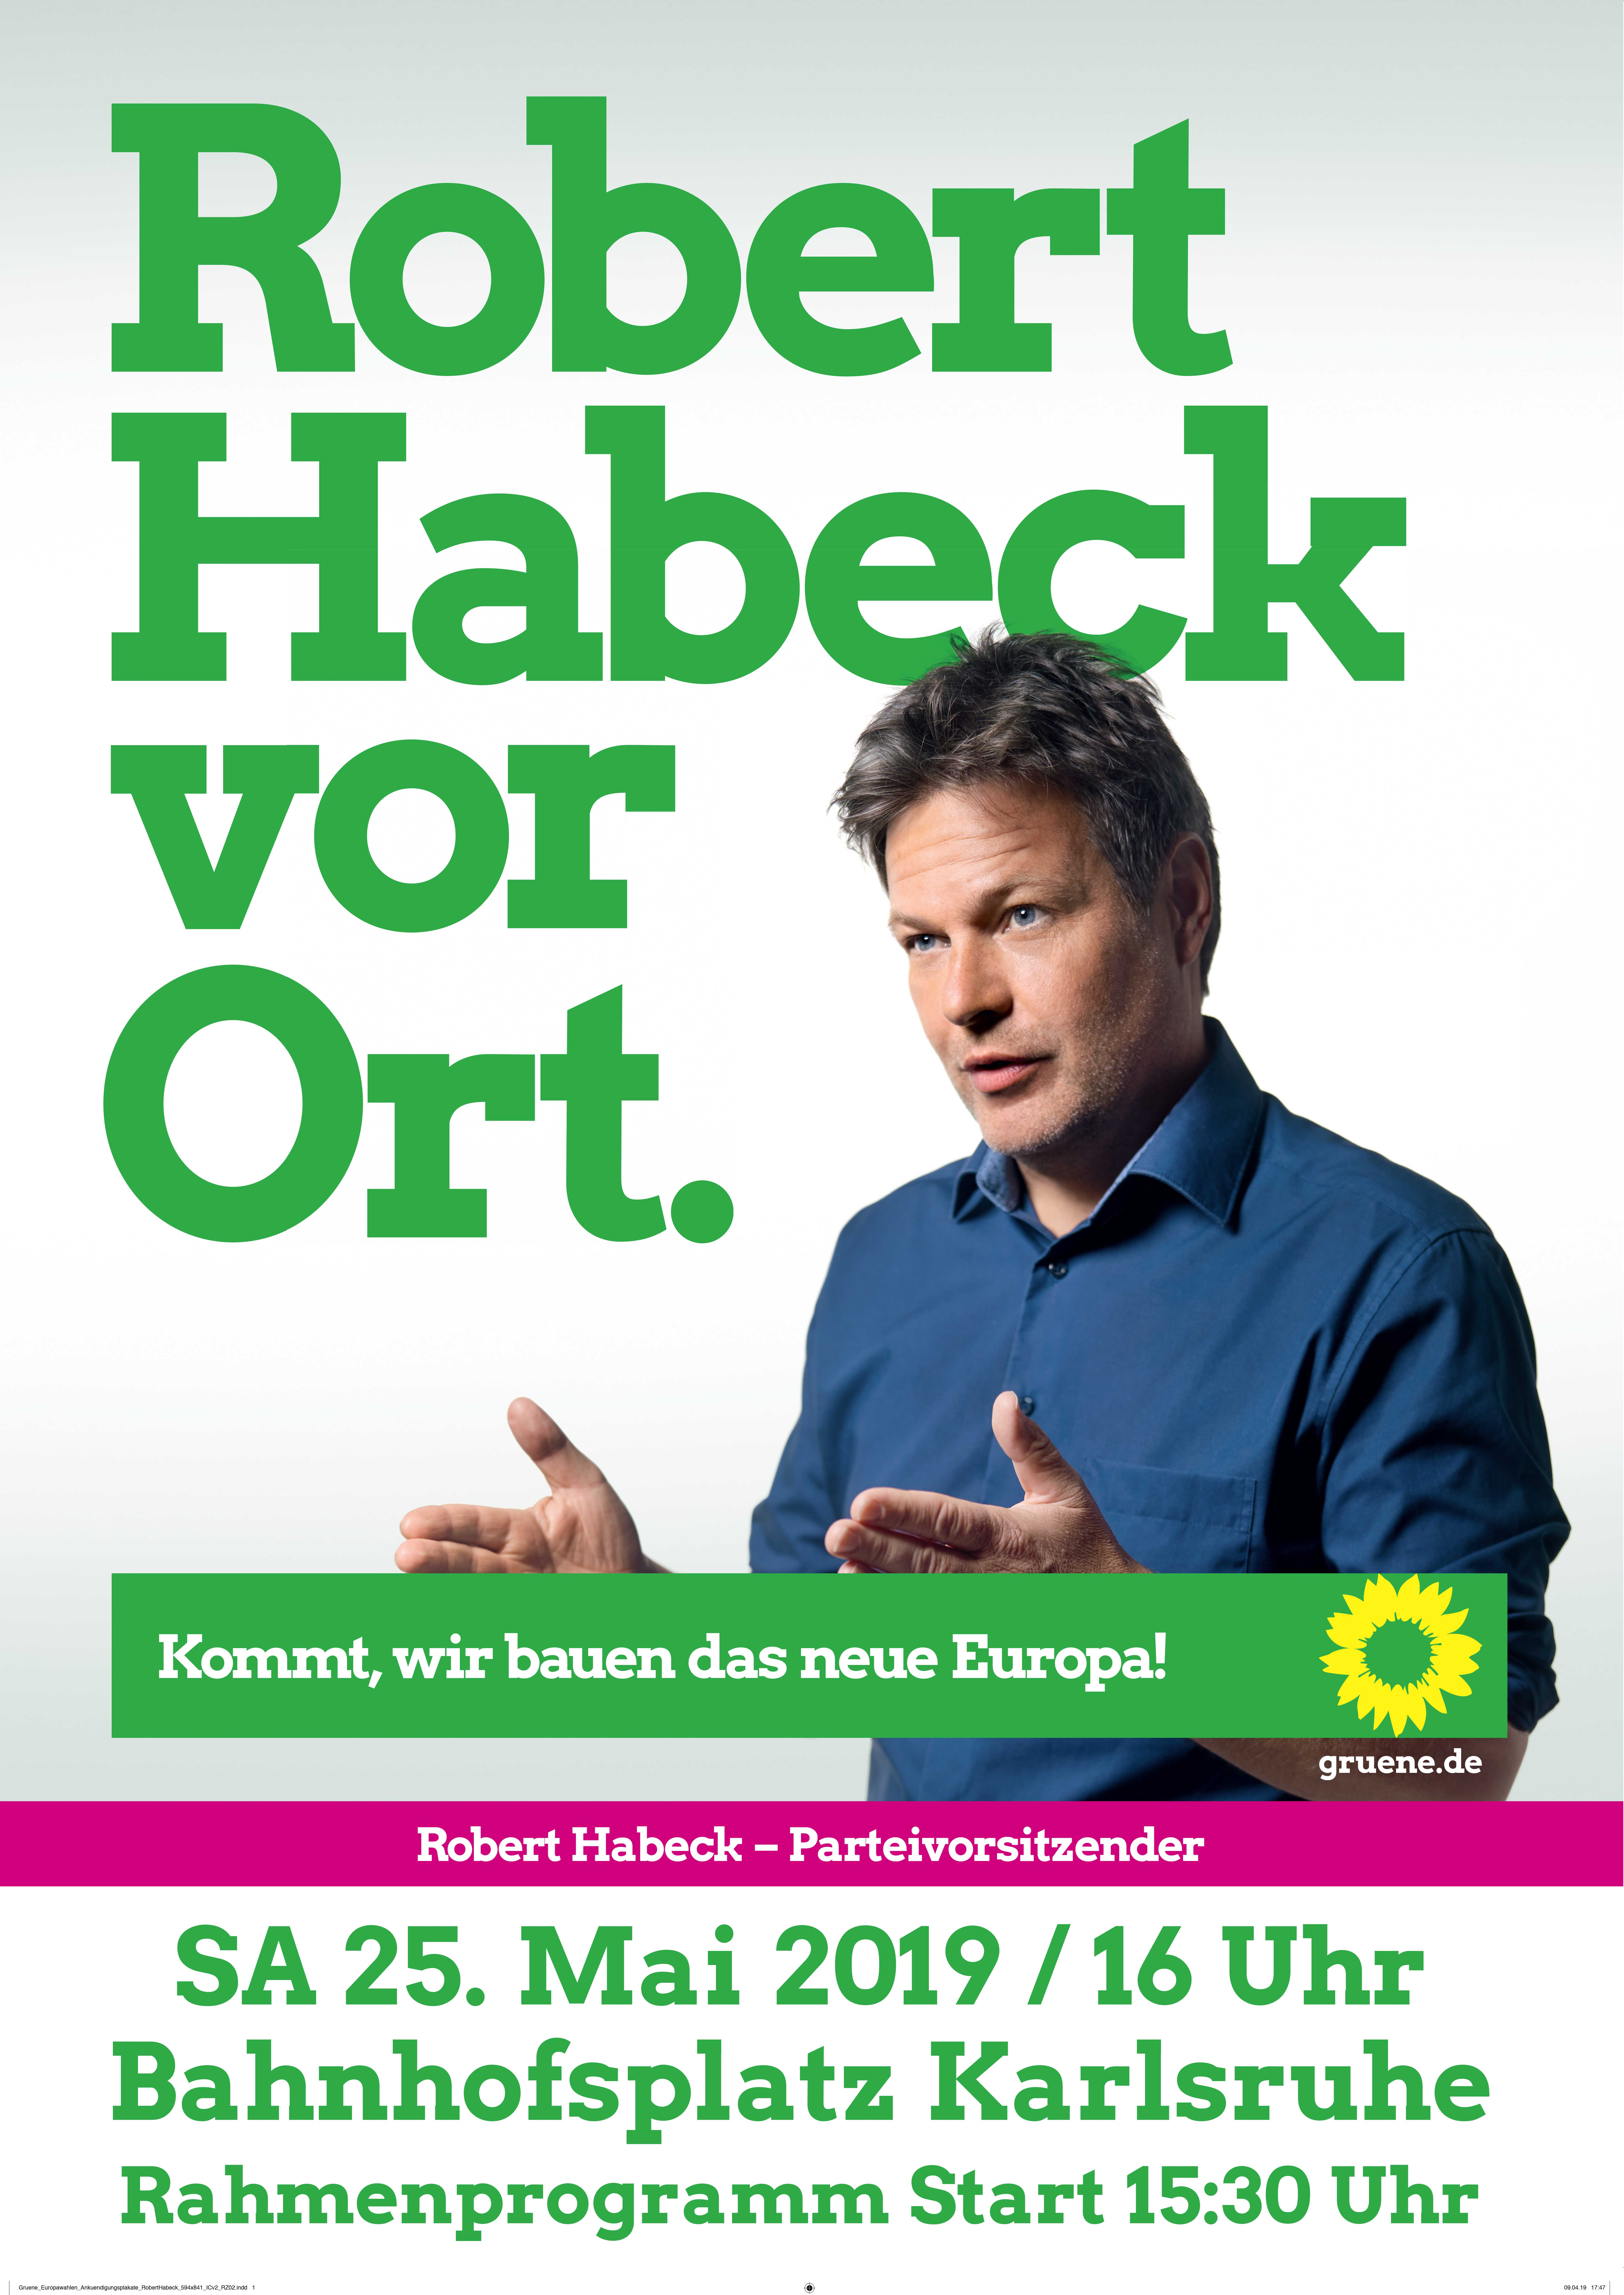 Robert Habeck in Karlsruhe – Triff ihn am Samstag, 25. Mai vor Ort!